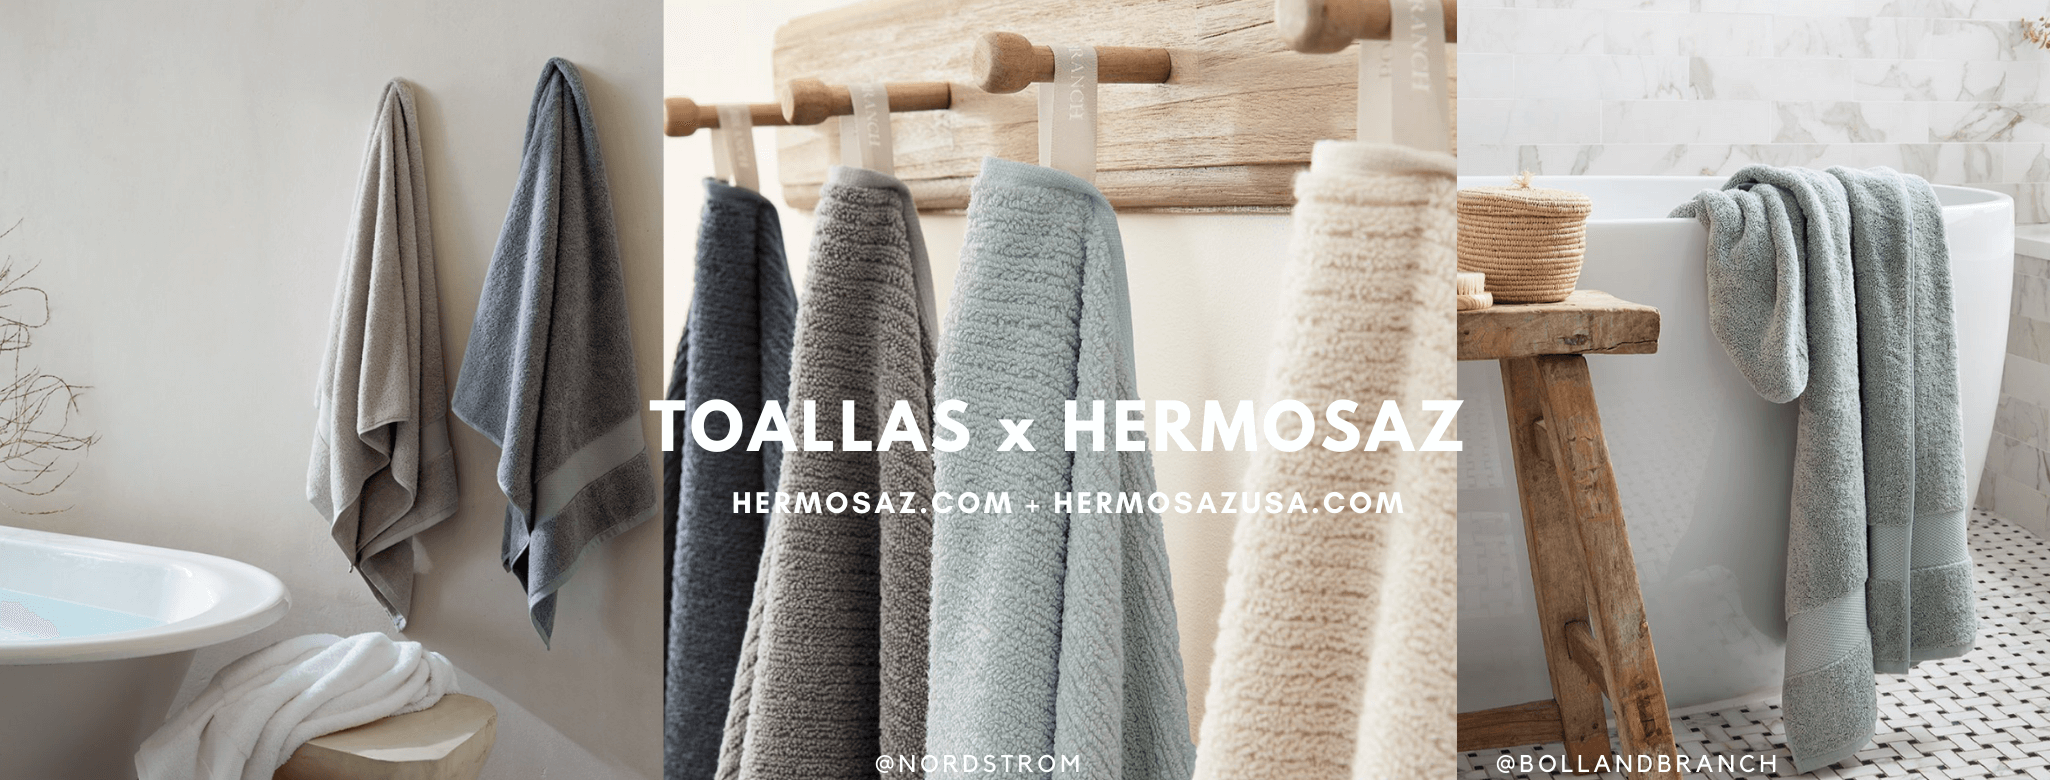 Towels x Hermosaz